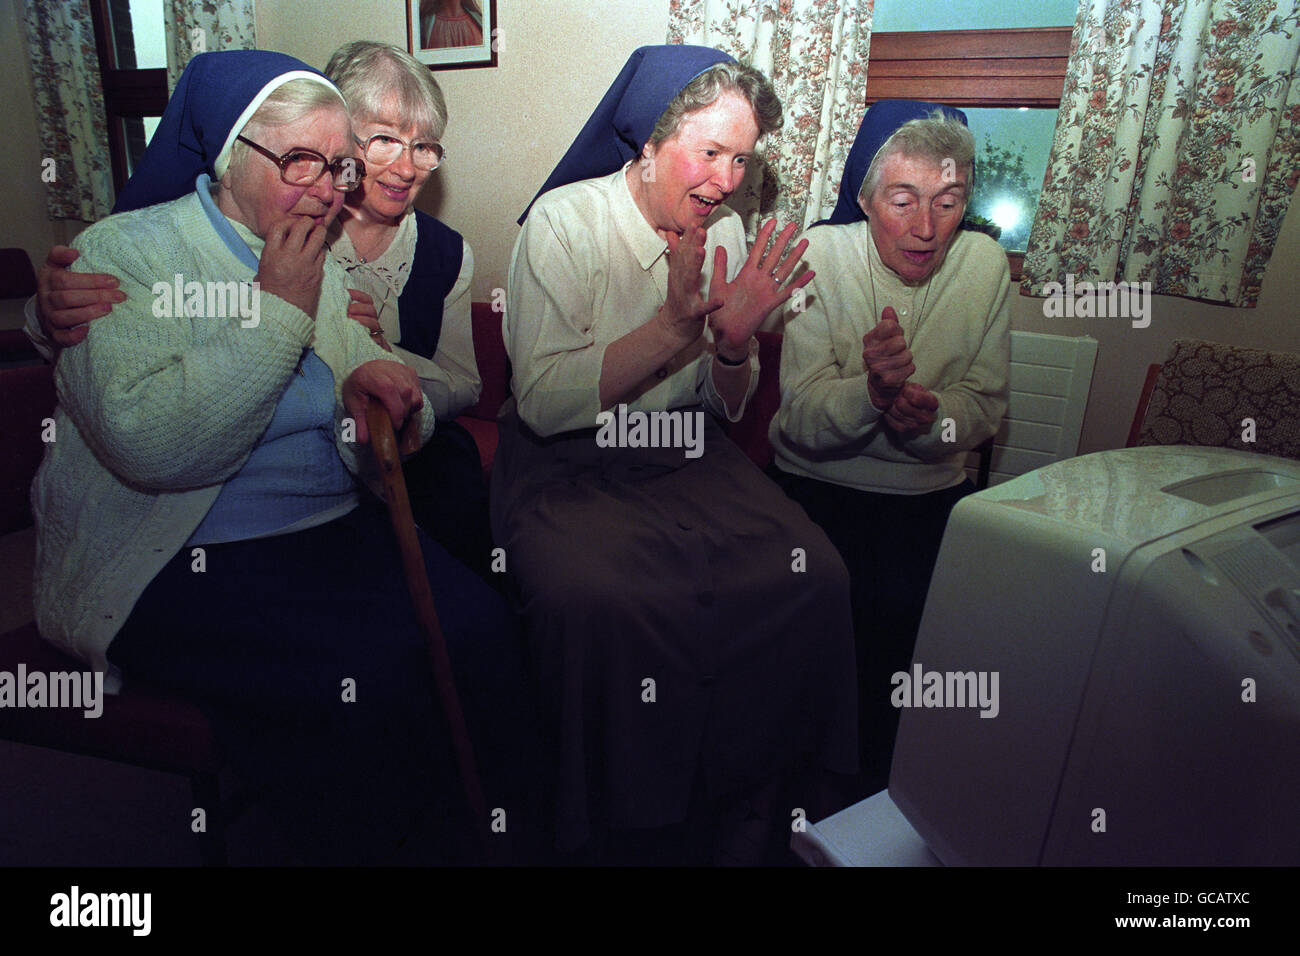 Schwestern vom Good Shepherd Convent in Twinbrook, nahe Belfast, teilen sich die Aufregung über die WM-Heldentaten in Nordirland, während sie das Spiel gegen Mexiko verfolgen, nachdem sie ihre tägliche Gebetszeit geändert haben. Stockfoto